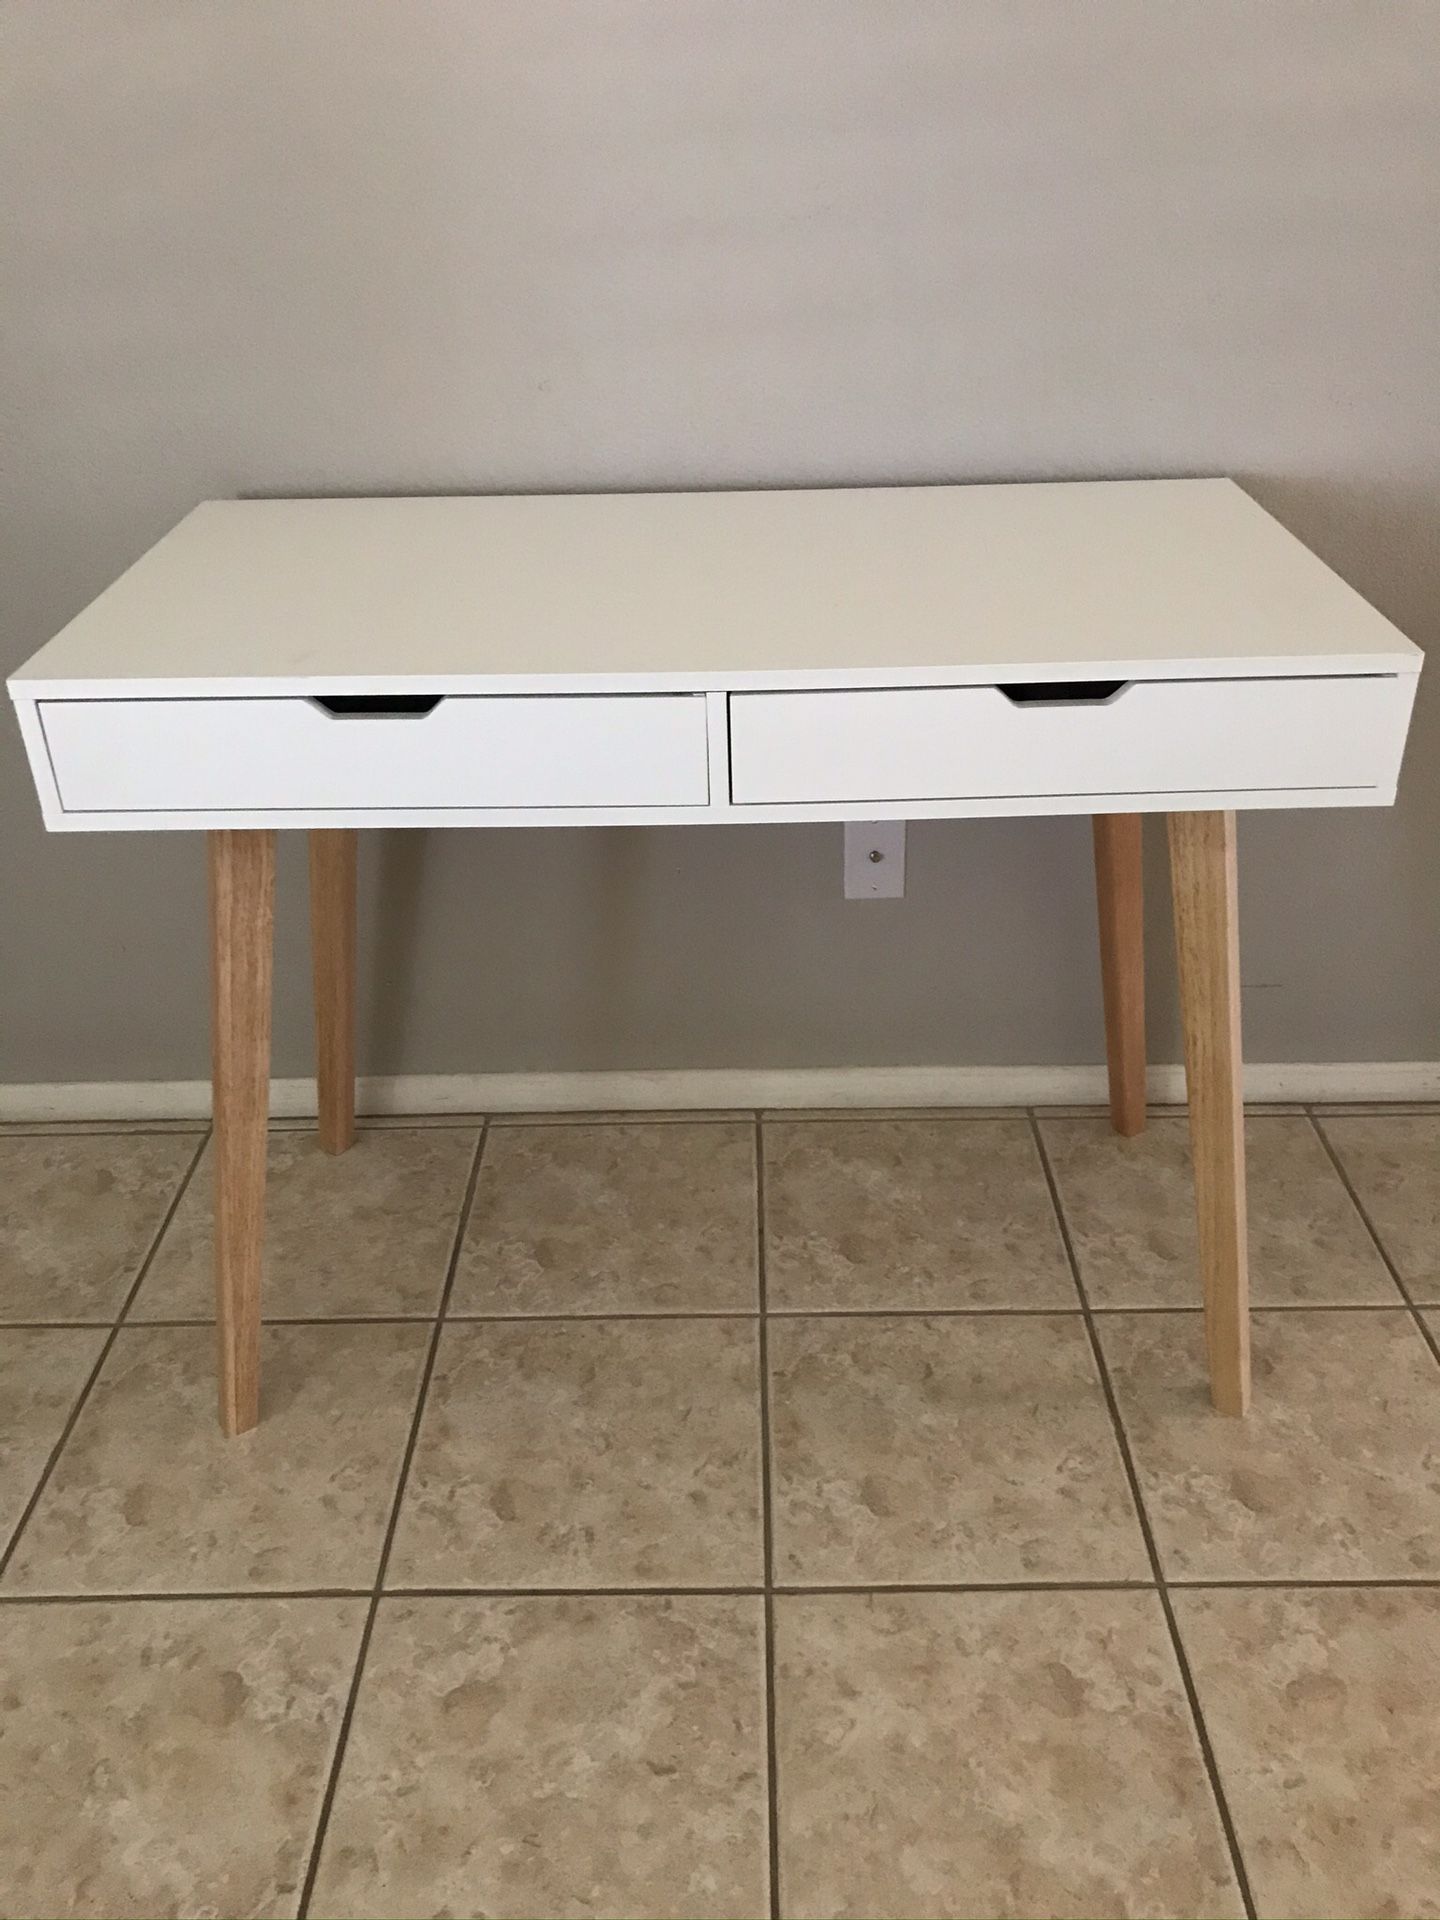 New White desk $160 dimensions shown in pic